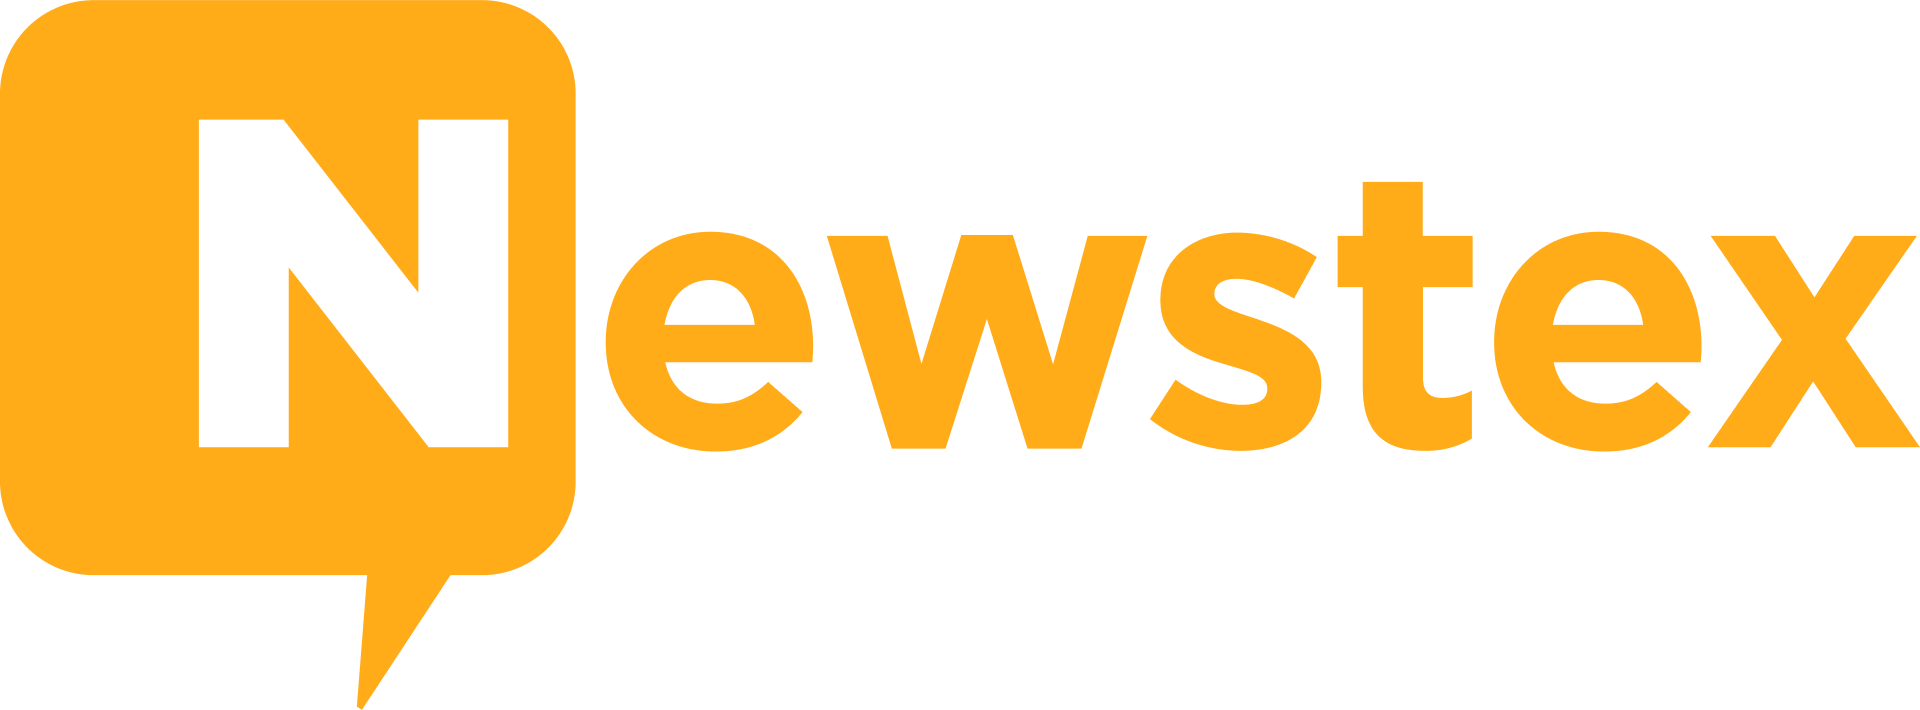 newstex-logo-1920w